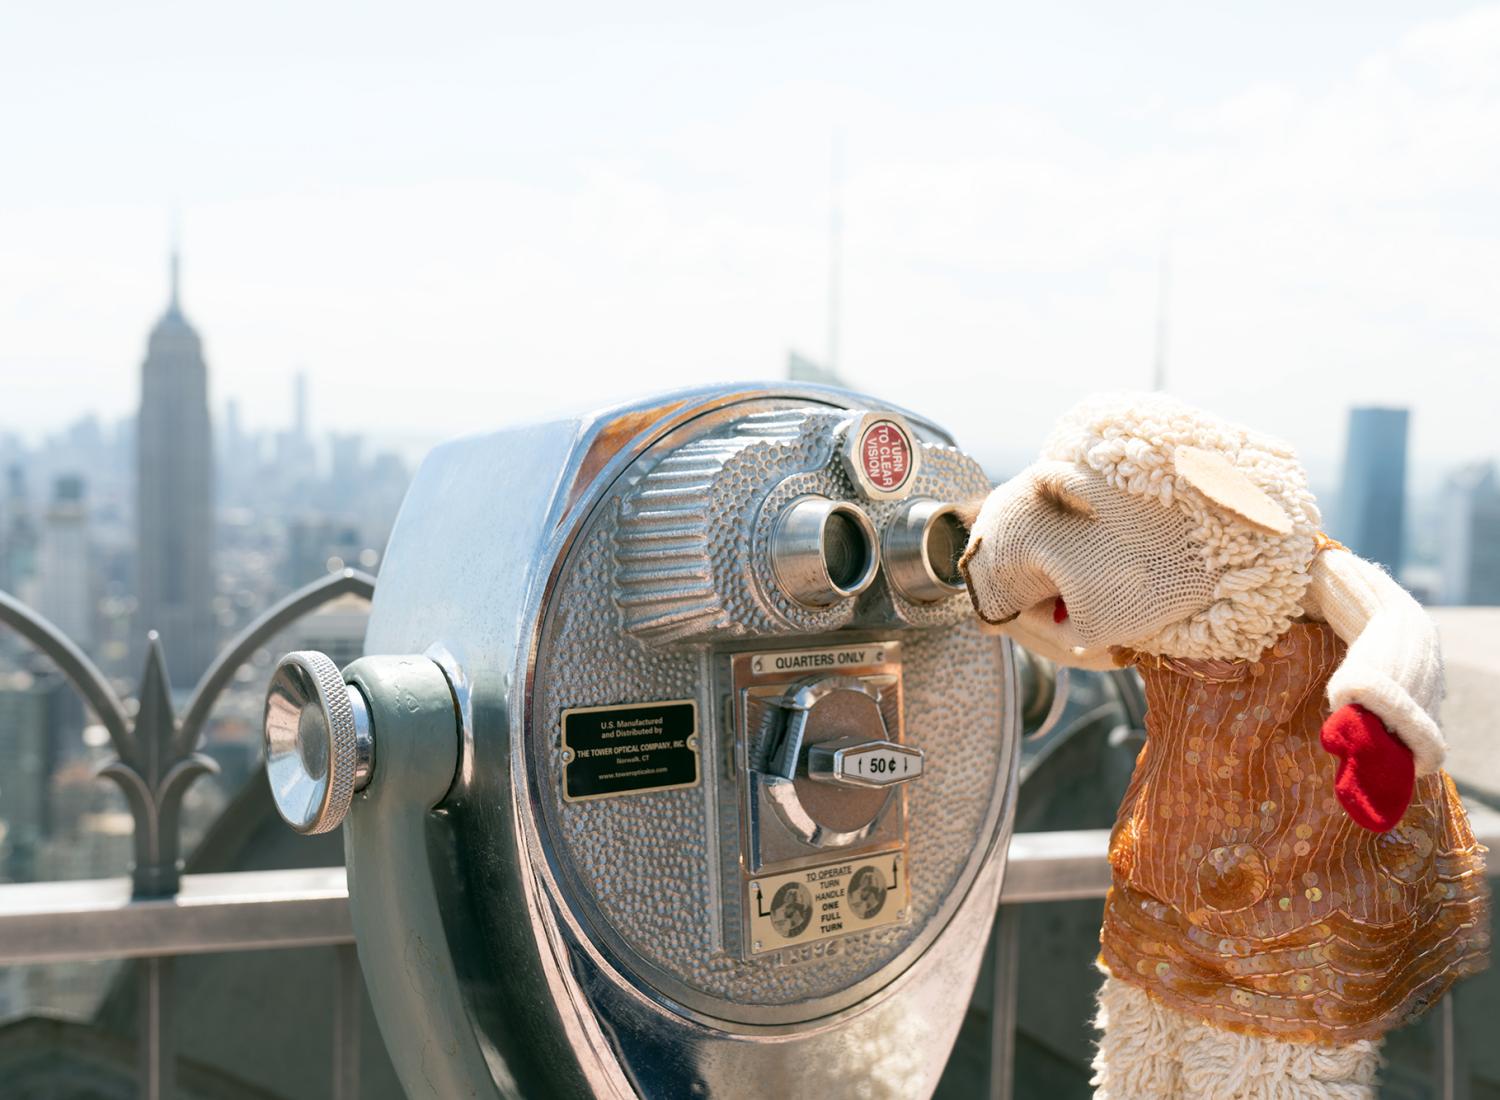  Lamb Chop at the Rockefeller Center observation deck